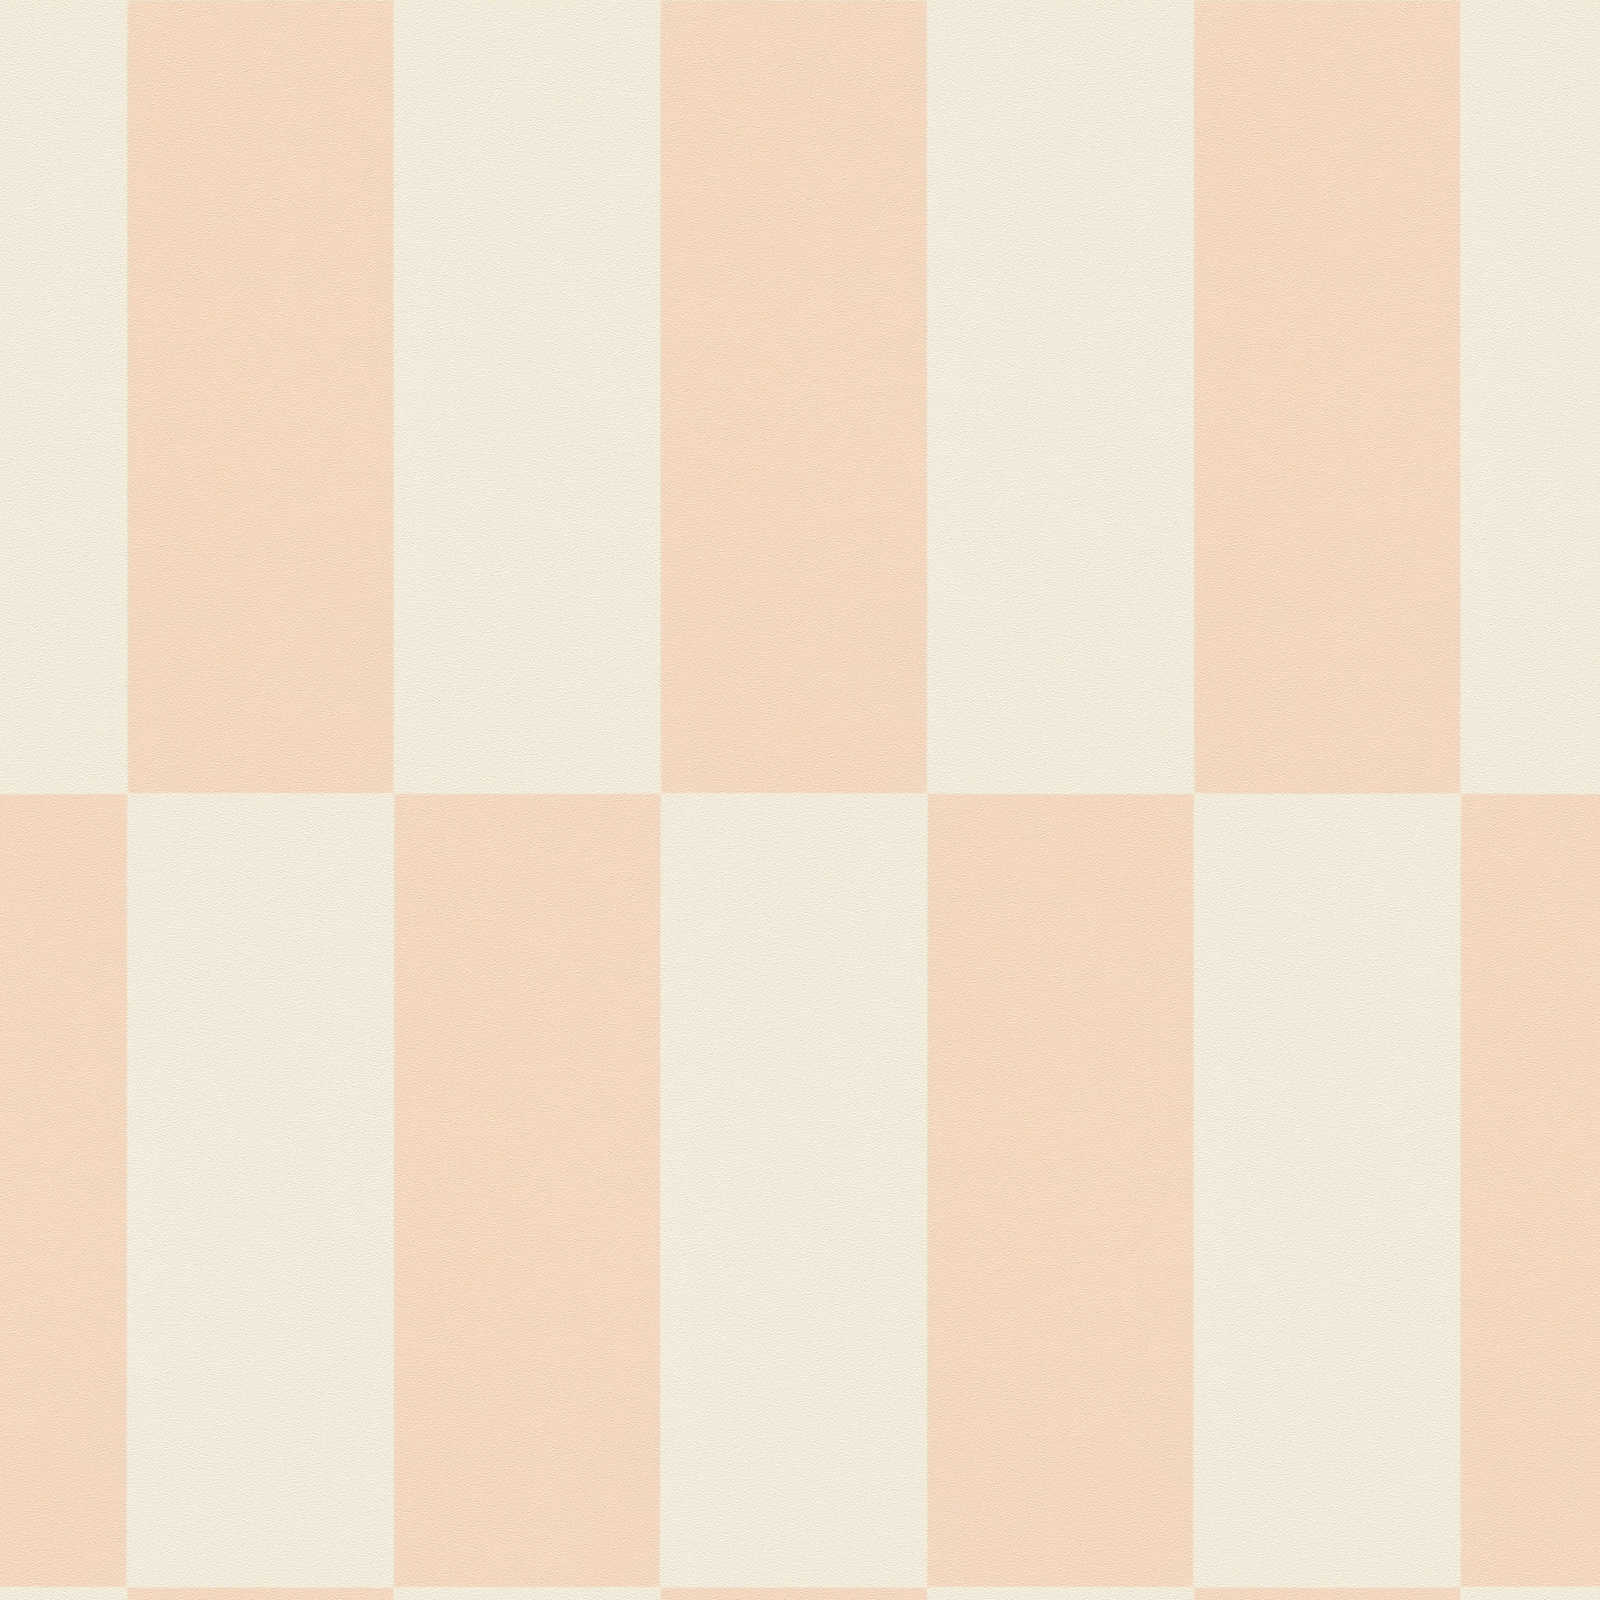             Papier peint intissé avec motif graphique rectangulaire - crème, rose
        